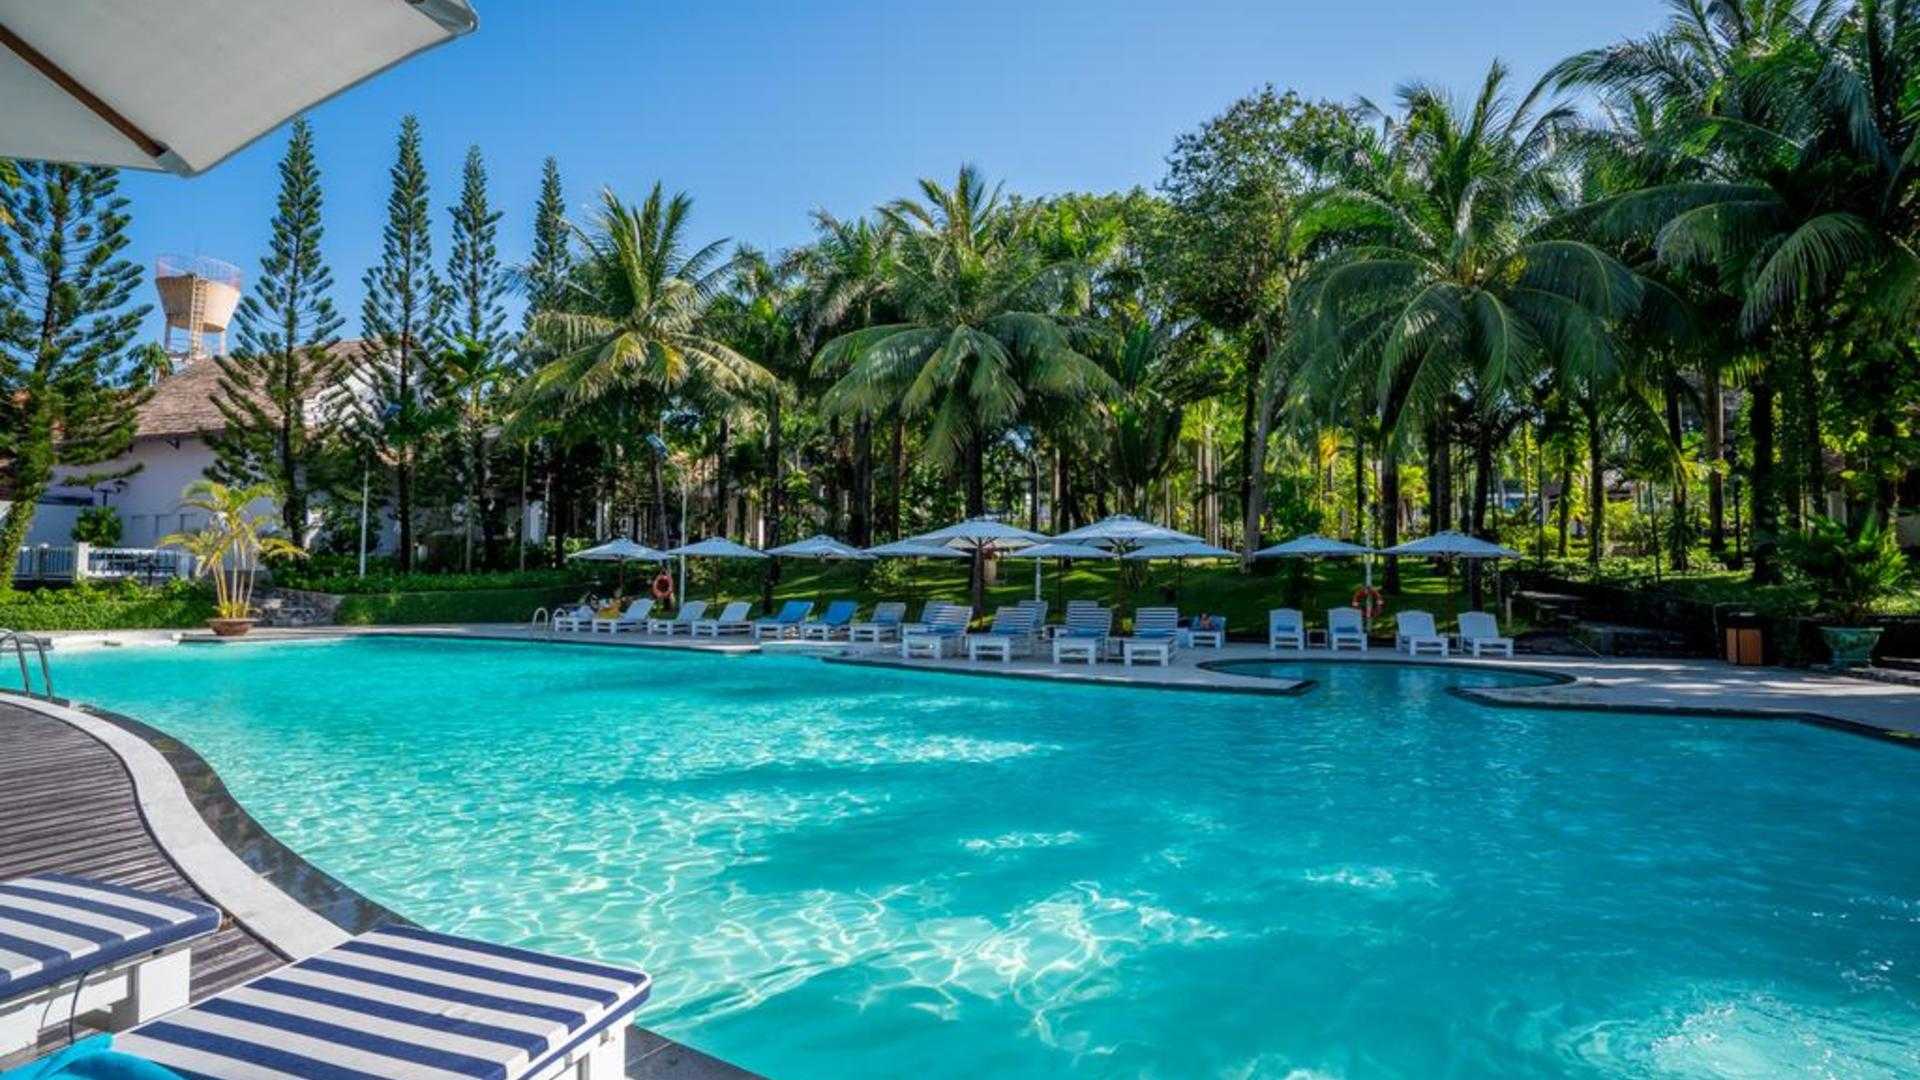 Отели на фукуоке вьетнам с хорошим пляжем – 15 лучших отелей острова фукуок (вьетнам) по отзывам туристов - 2019